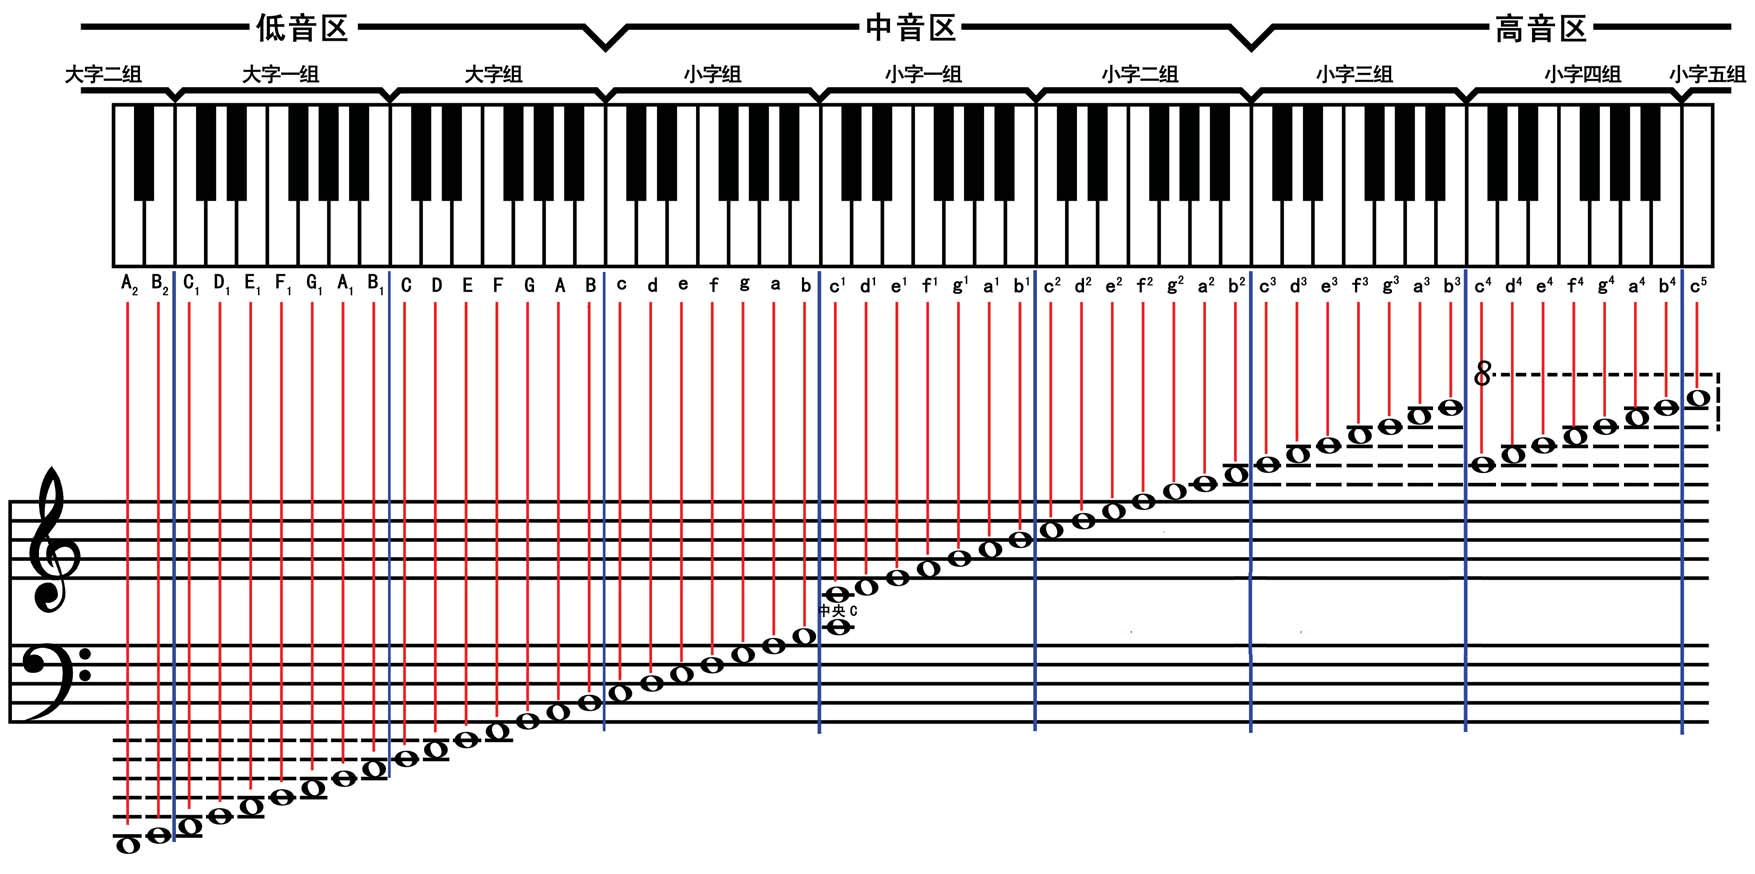 五线谱、简谱与钢琴键盘对照图